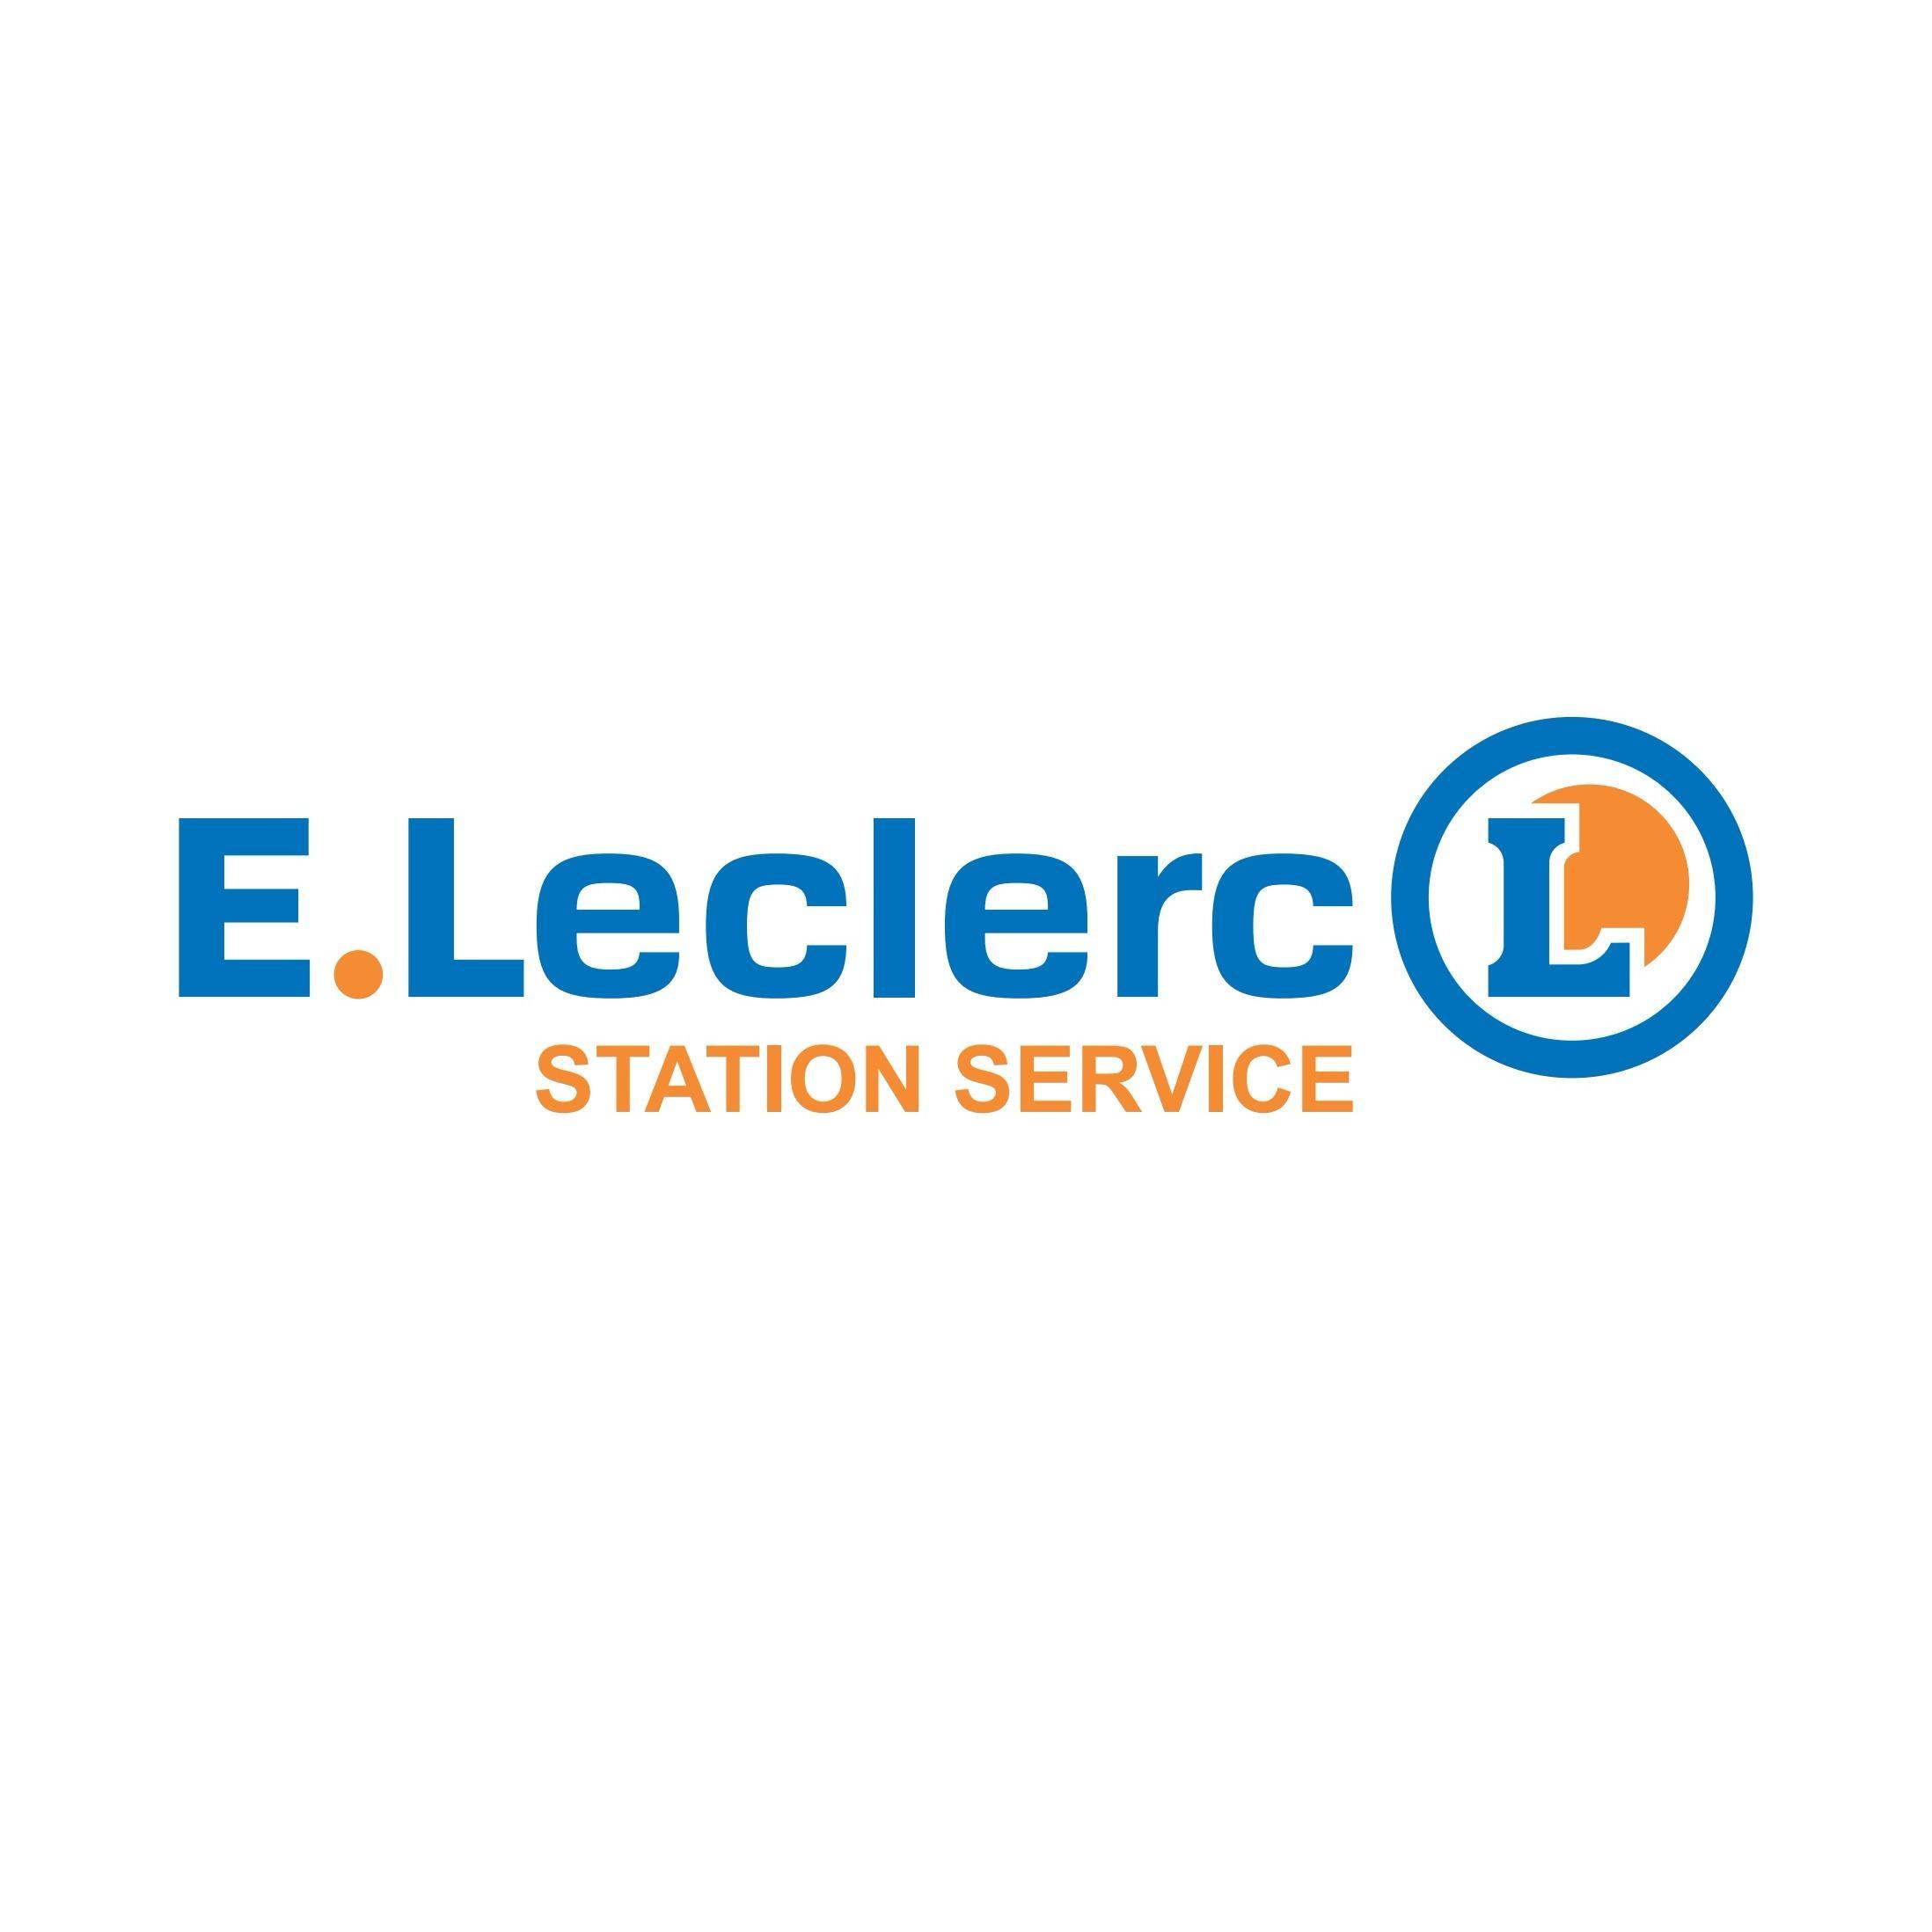 E.leclerc Station Service Firminy